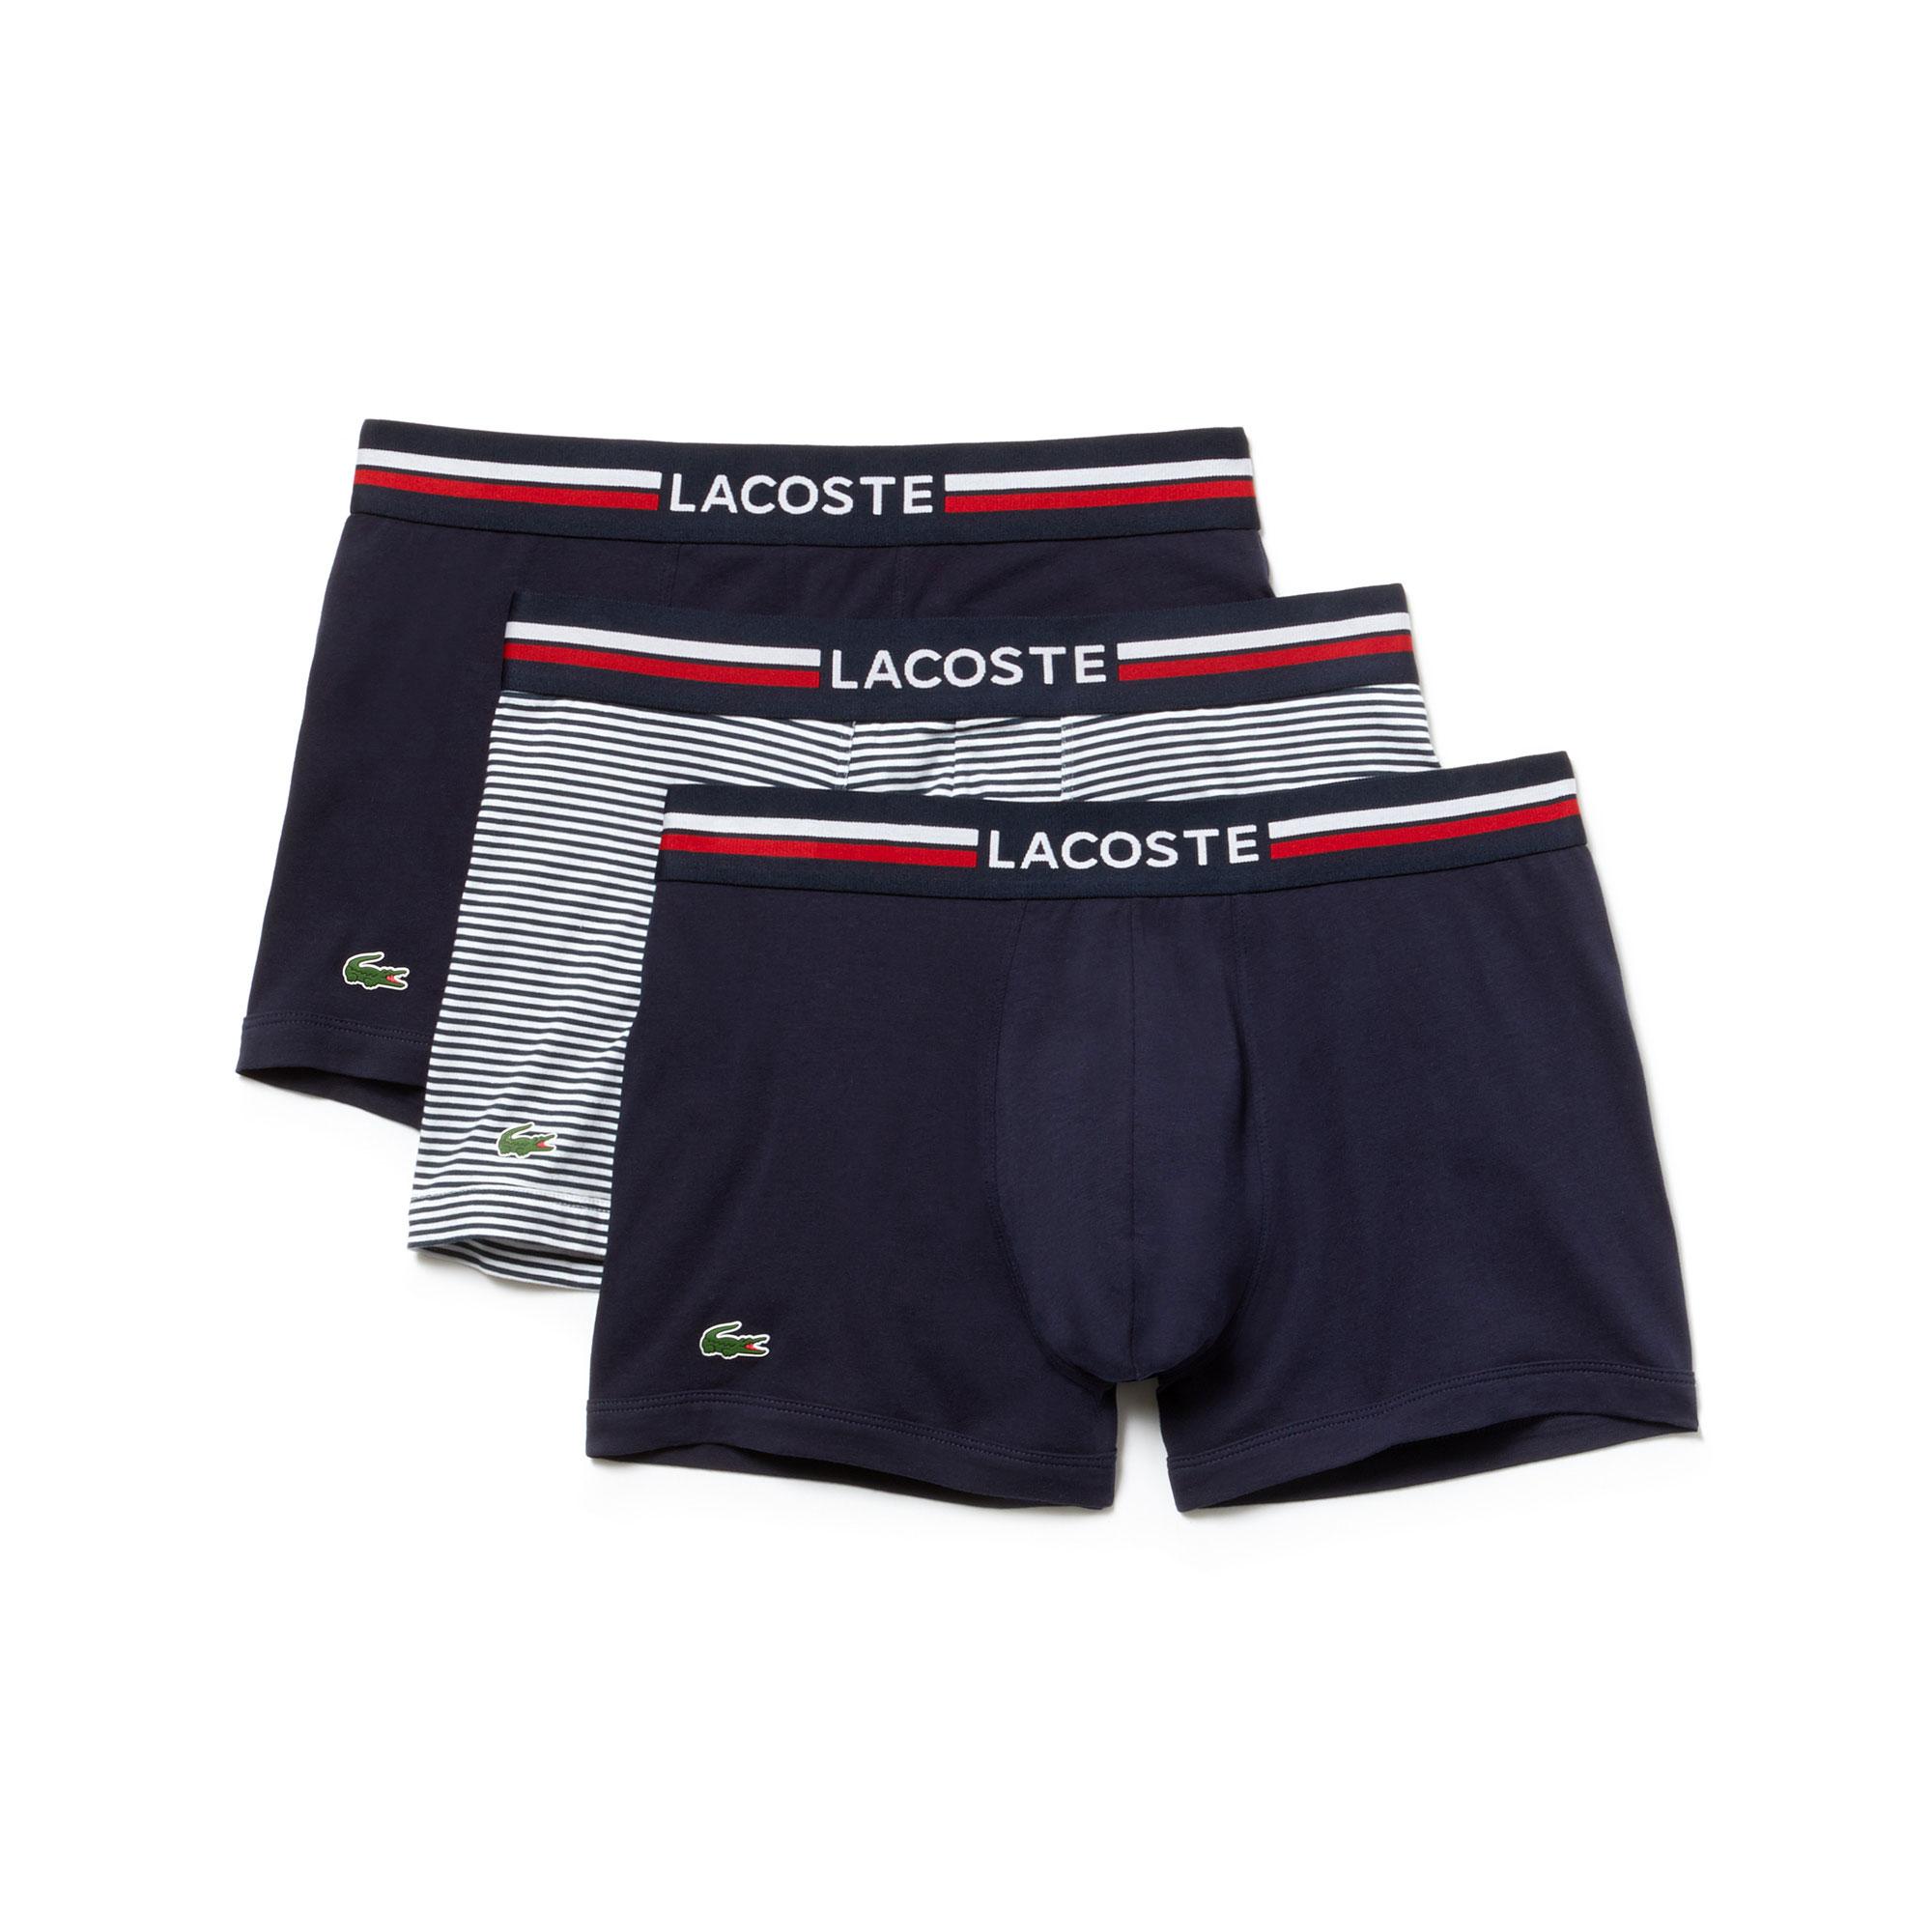 lacoste men's underwear